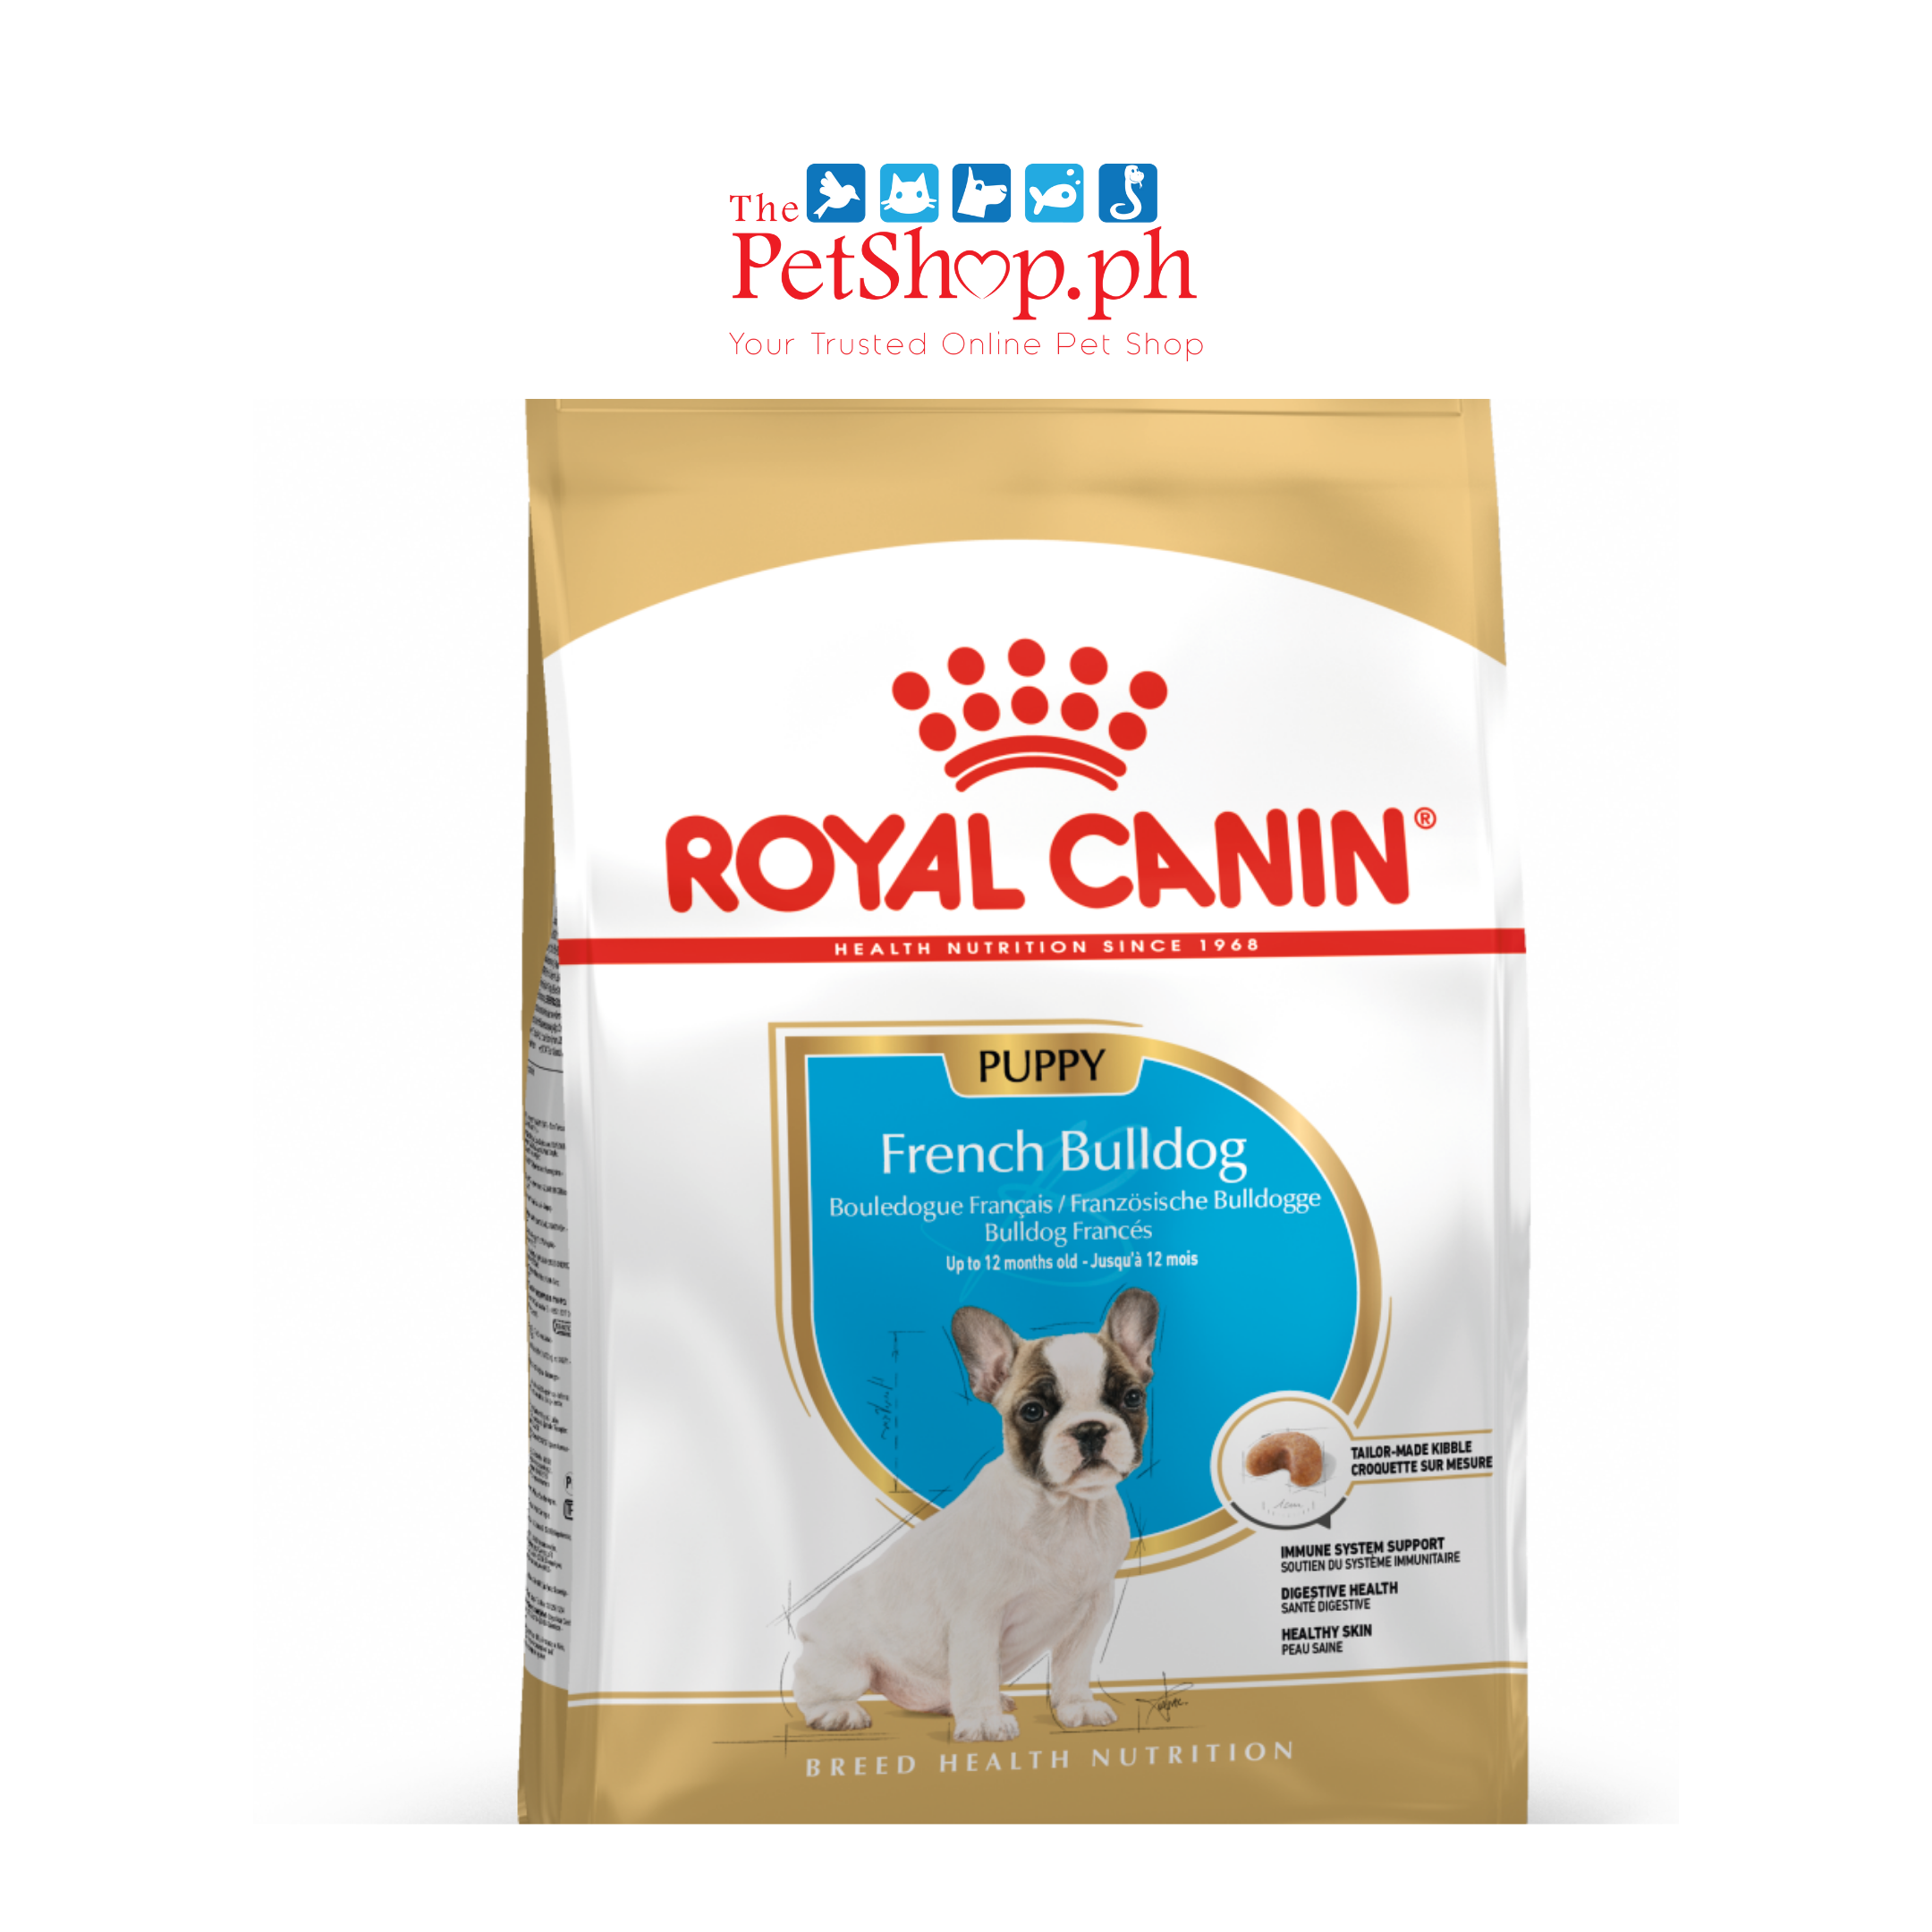 Royal Canin  French Bulldog 3kg Puppy Dry Dog Food Breed Health Nutrition